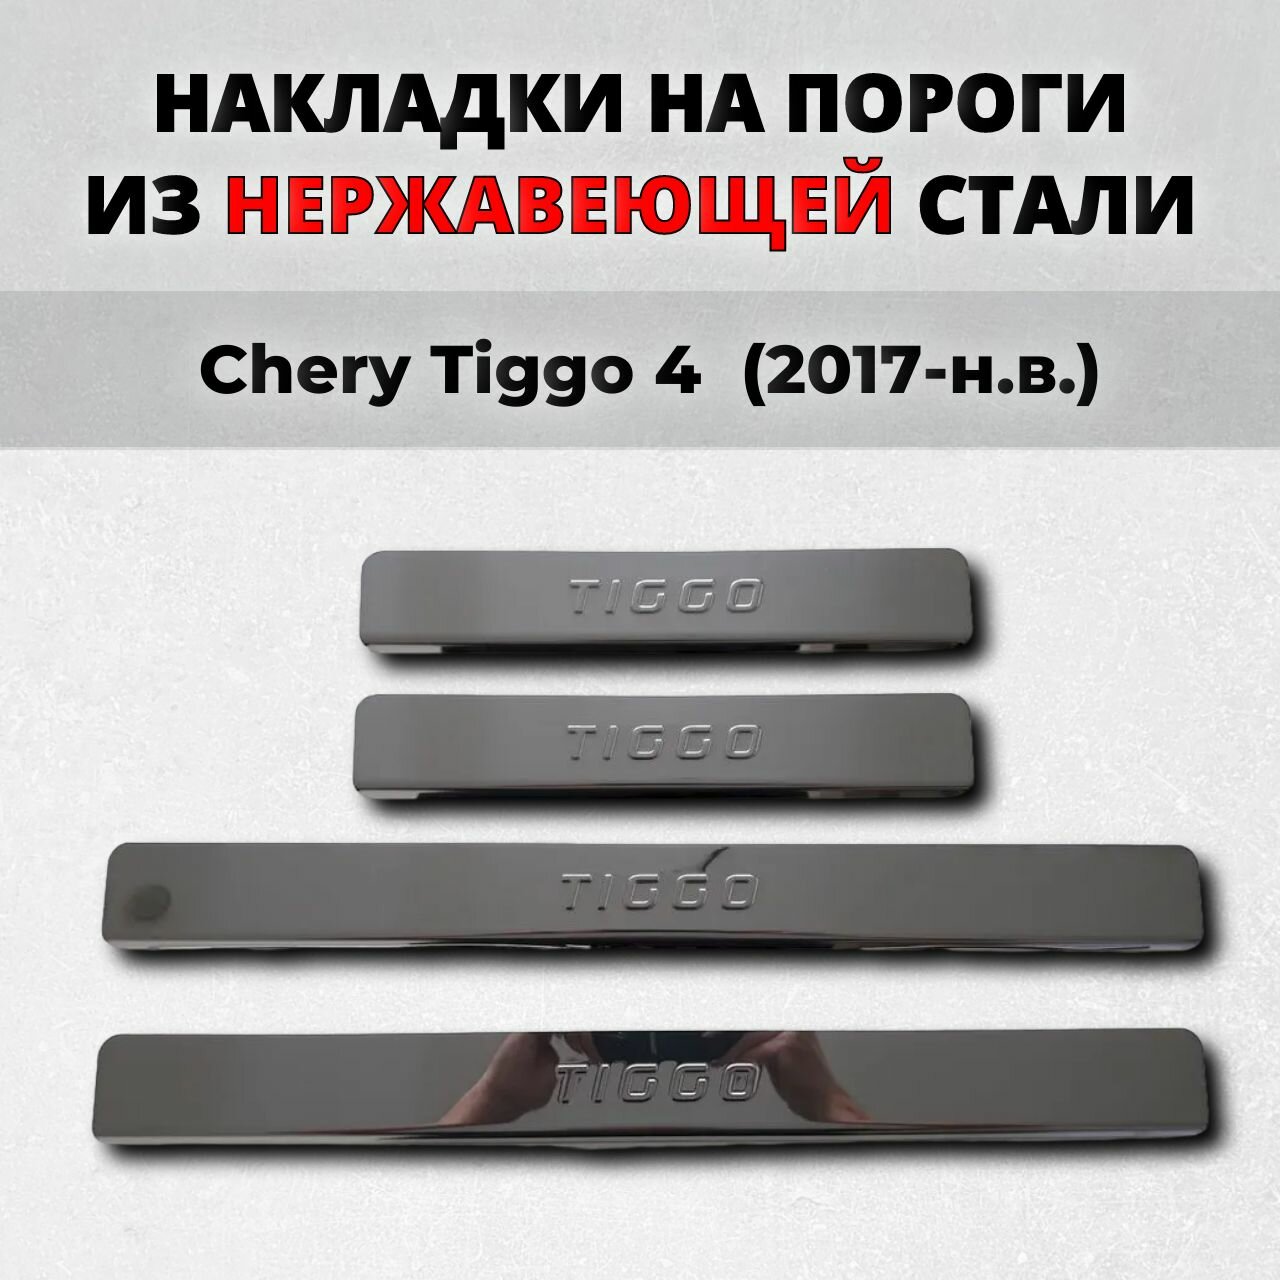 Накладки на пороги Чери Тигго 4 2017-н. в. из нержавеющей стали CHERY Tiggo 4